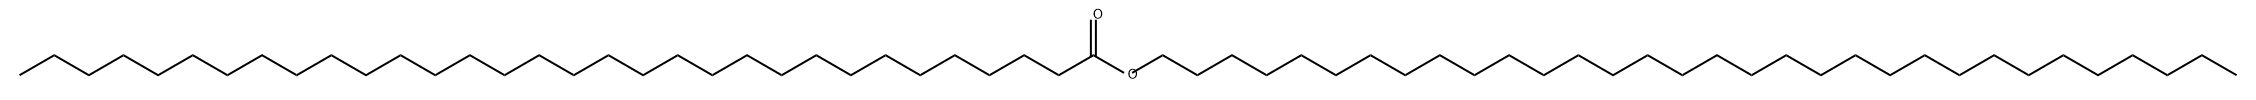 74686-58-1 Dotriacontanoic acid dotriacontyl ester